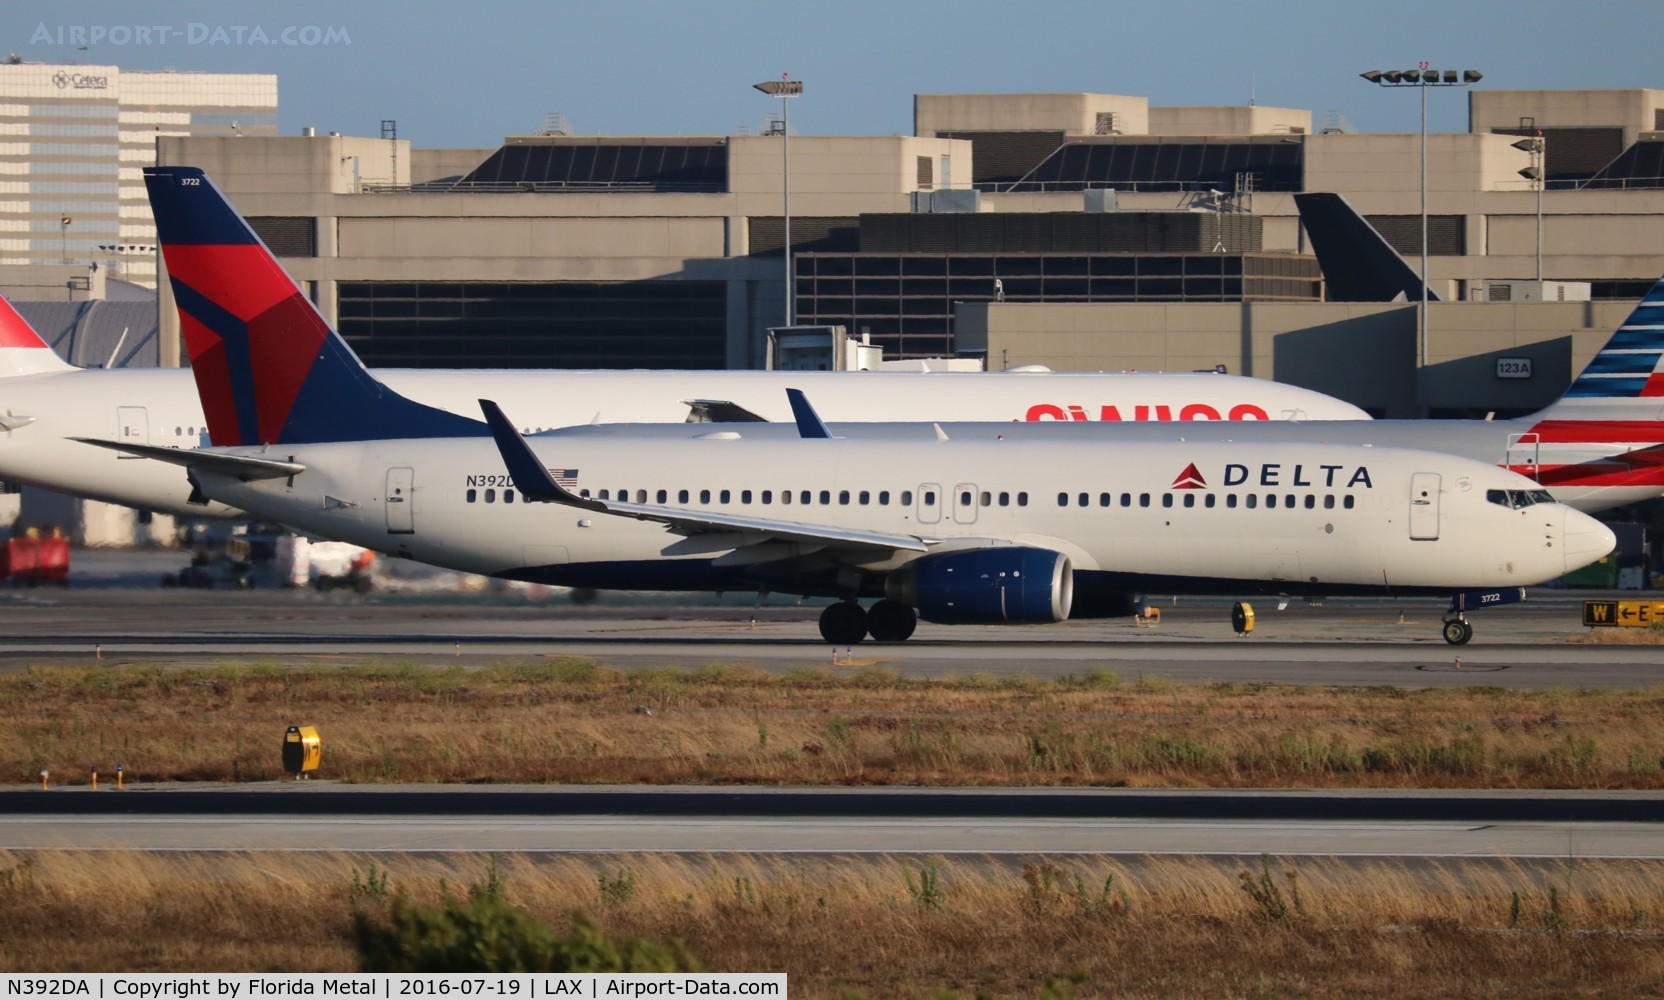 N392DA, 2000 Boeing 737-832 C/N 30561, Delta